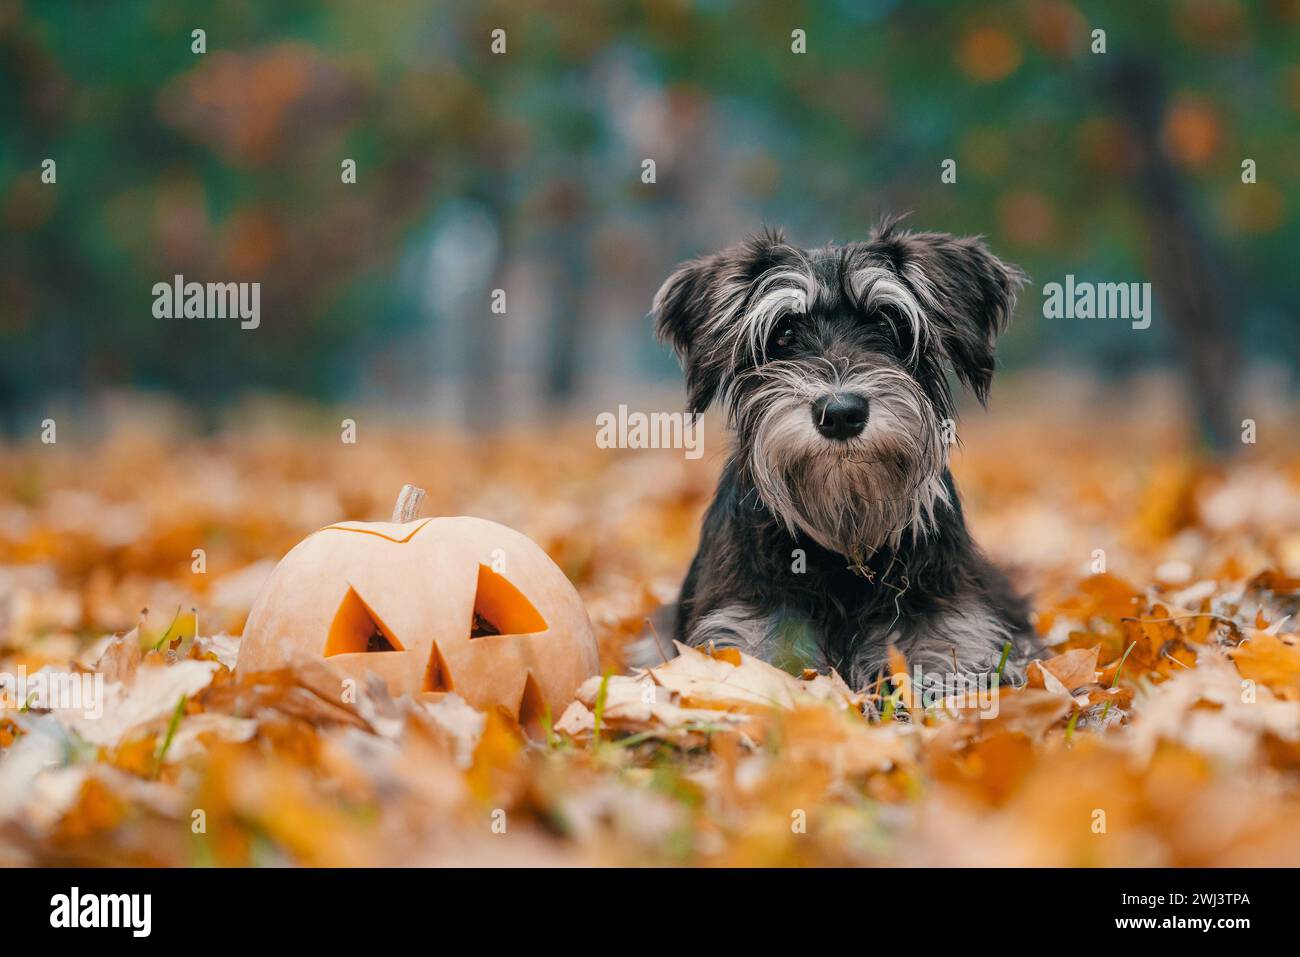 Zucca di Halloween e cane schnauzer in miniatura giacciono in foglie cadute d'autunno gialle nel parco Foto Stock